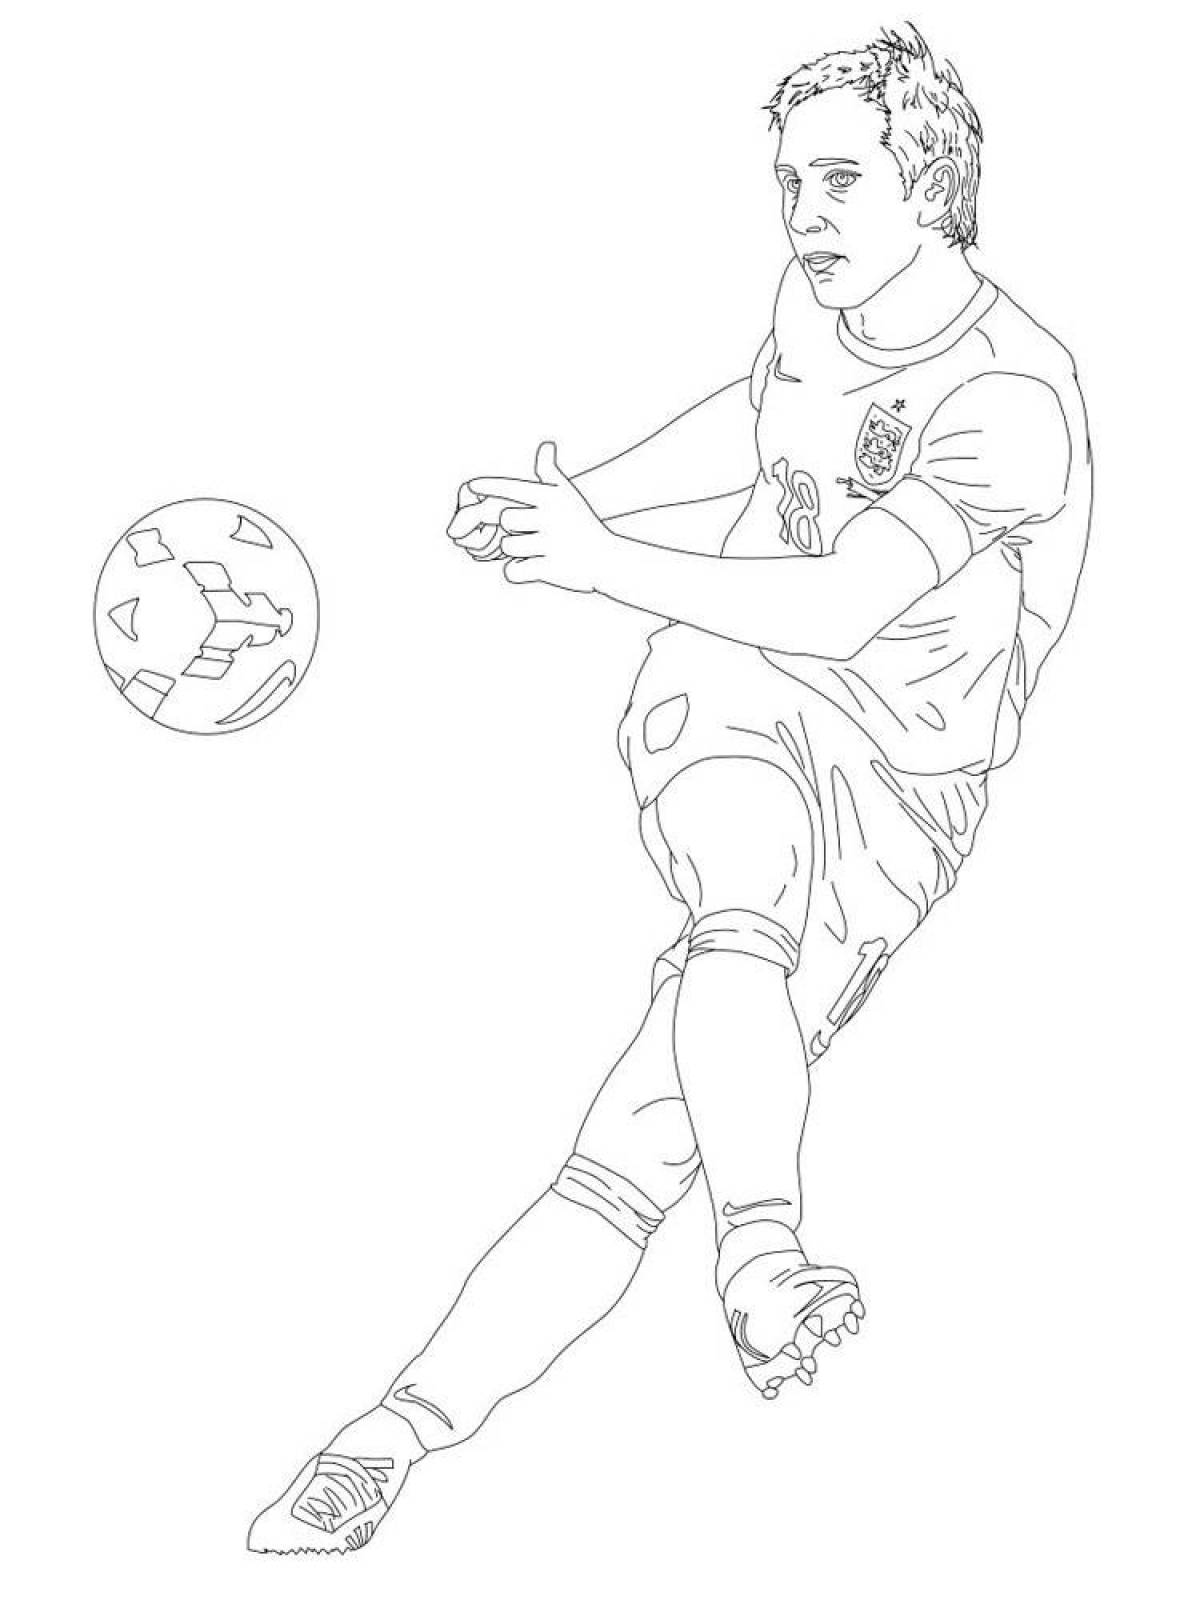 Анимированная страница-раскраска футболиста